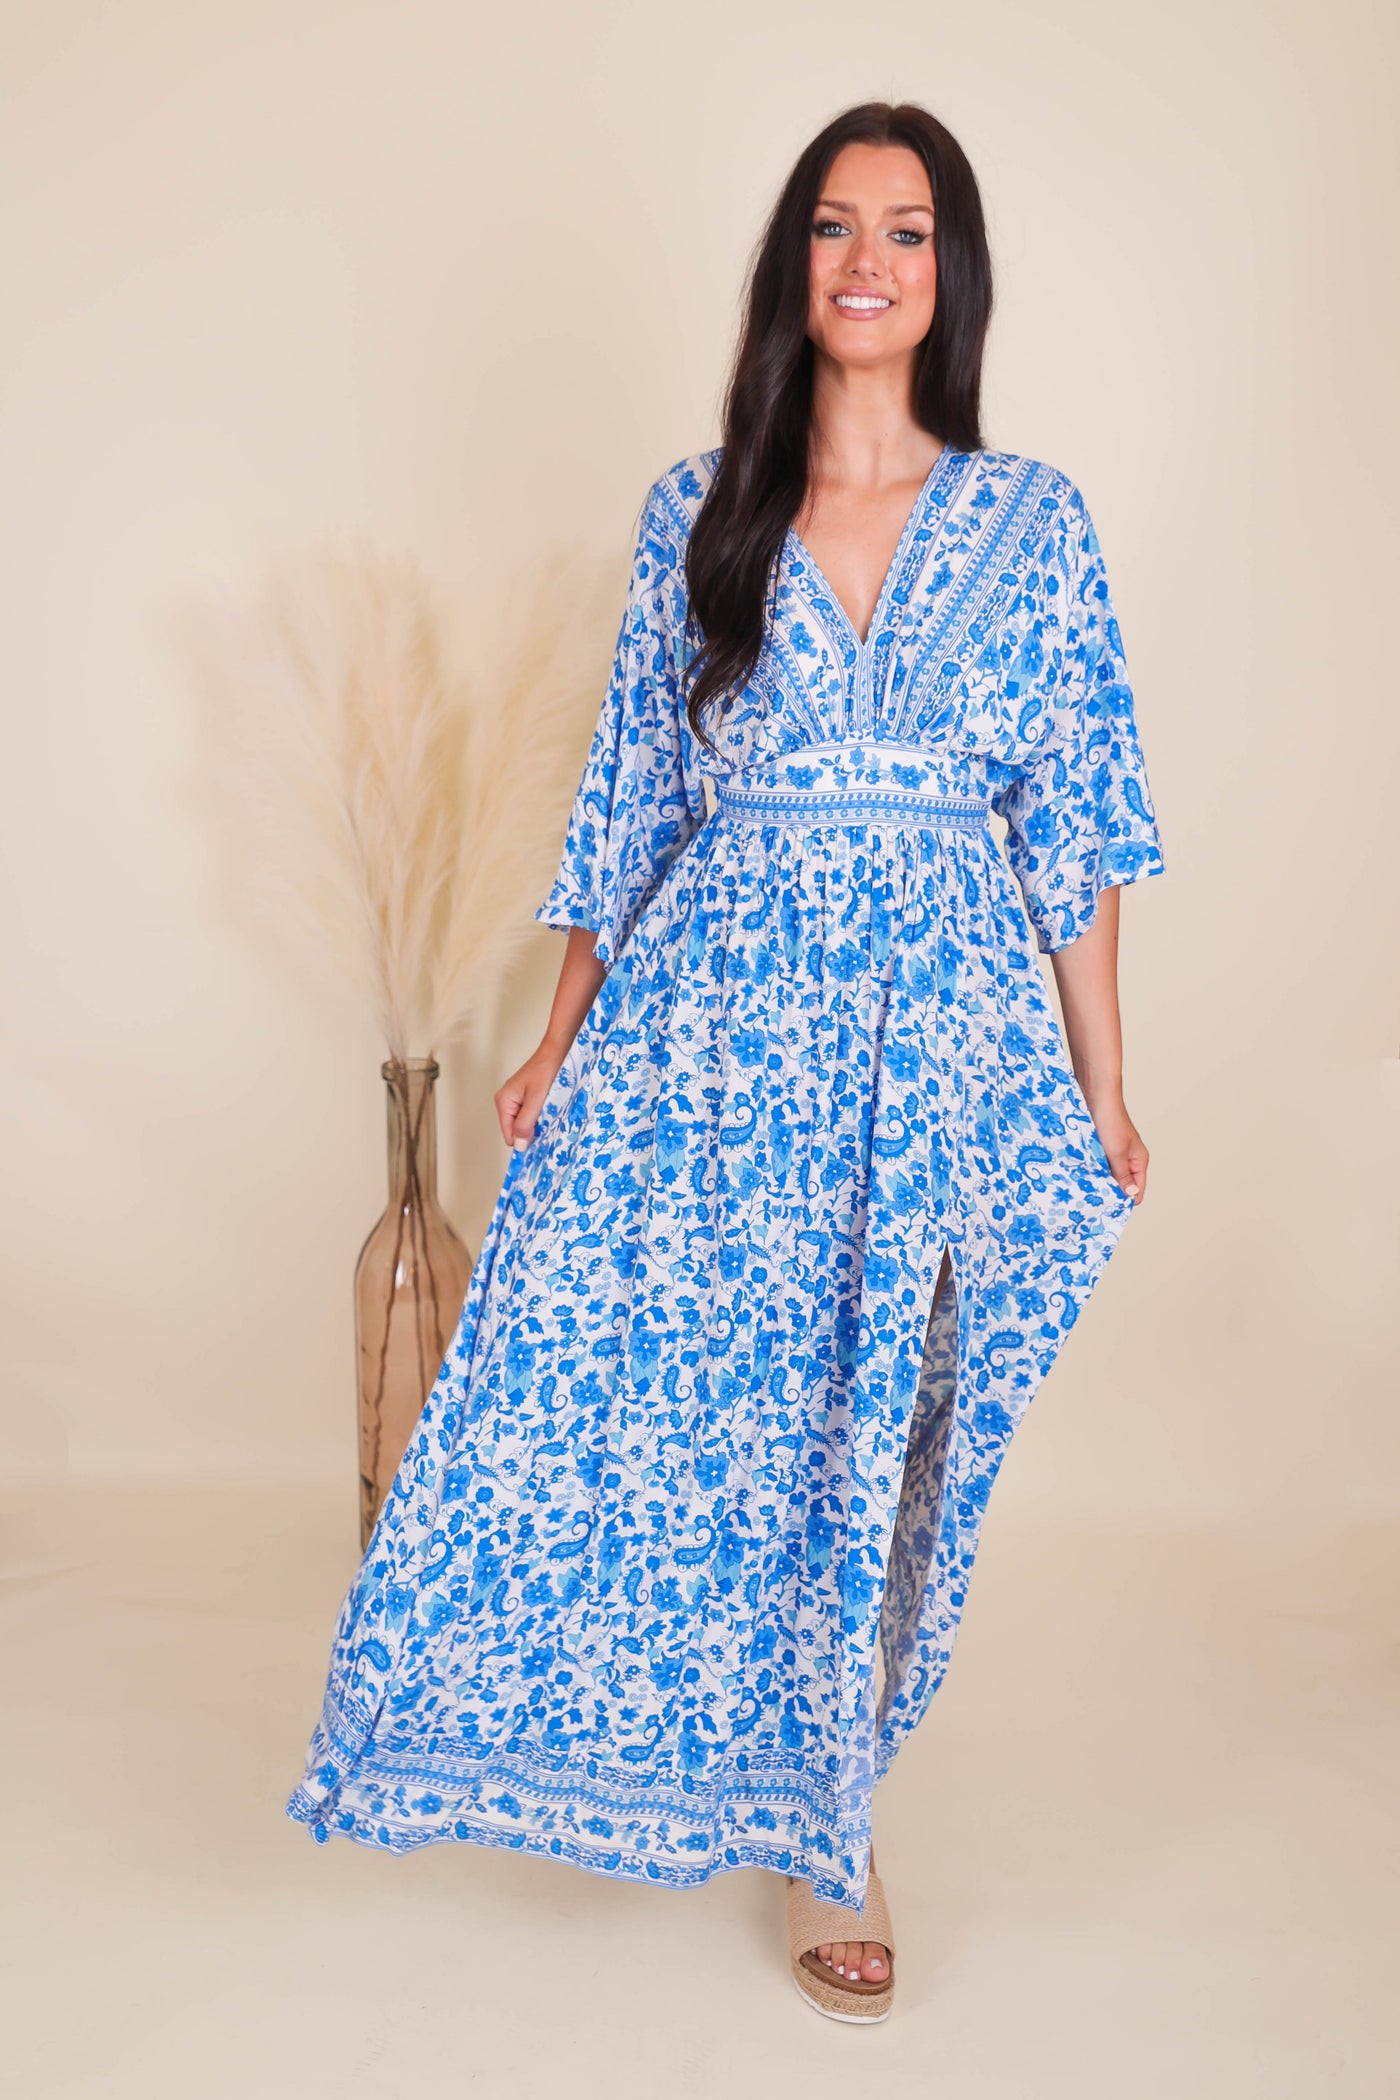 Women's Blue Print Dress- Women's Vacation Maxi Dress- Aakaa Maxi Dress